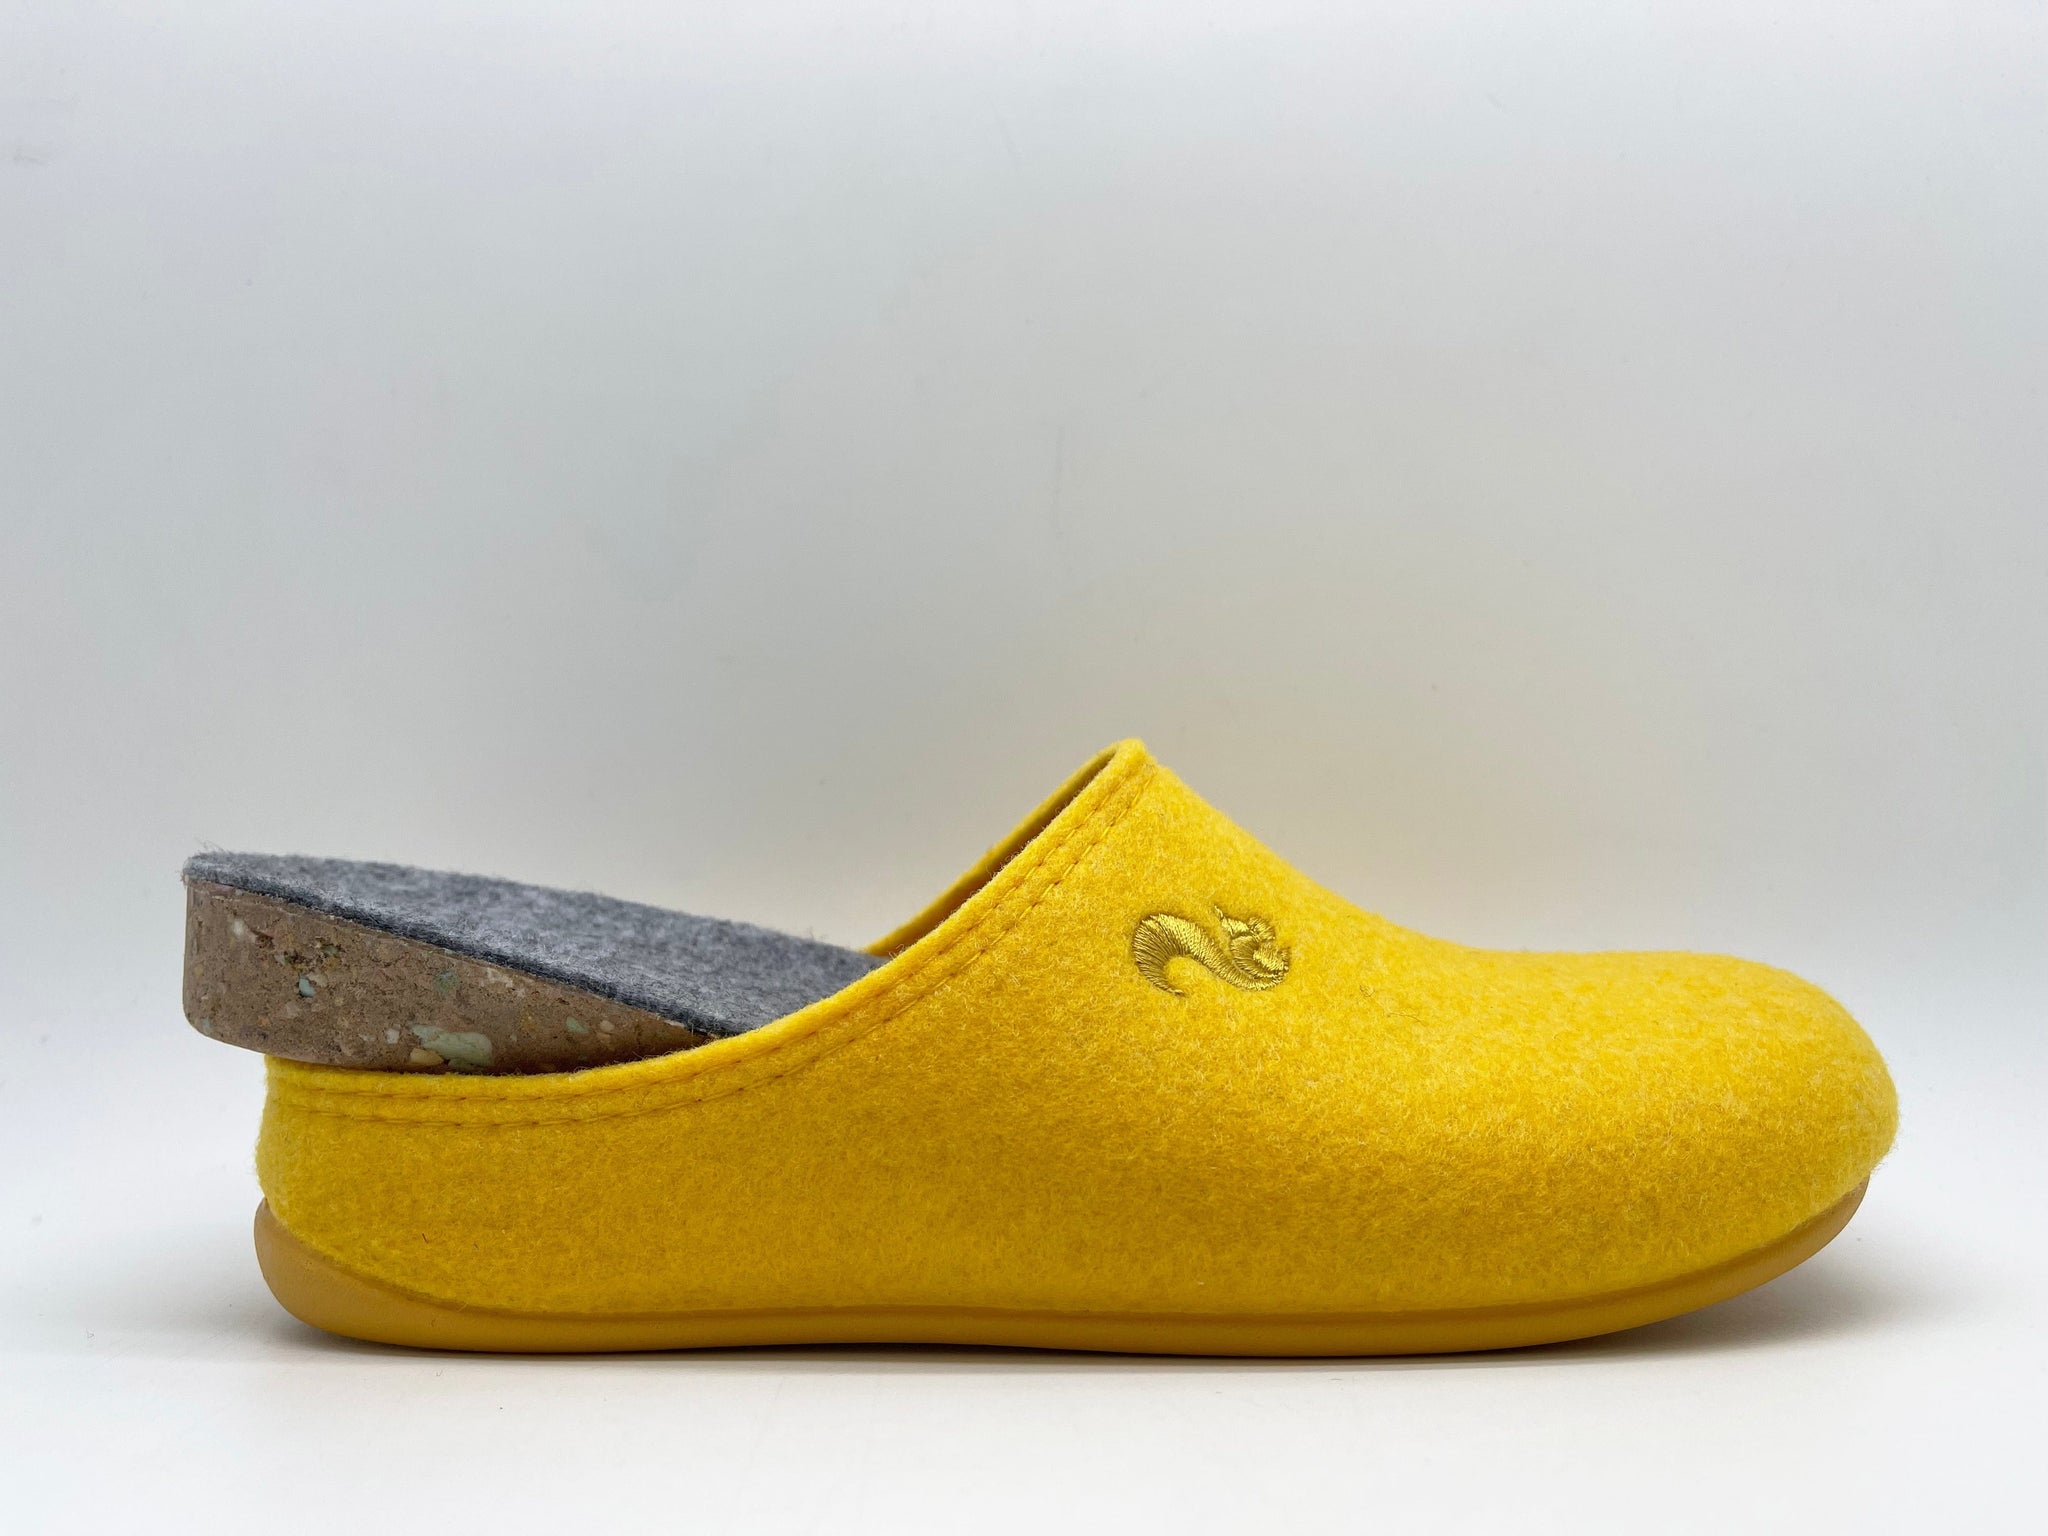 NAT 2 fodtøj thies 1856 ® Genbrugt PET Slipper vegansk gul (W/X) bæredygtig mode etisk mode